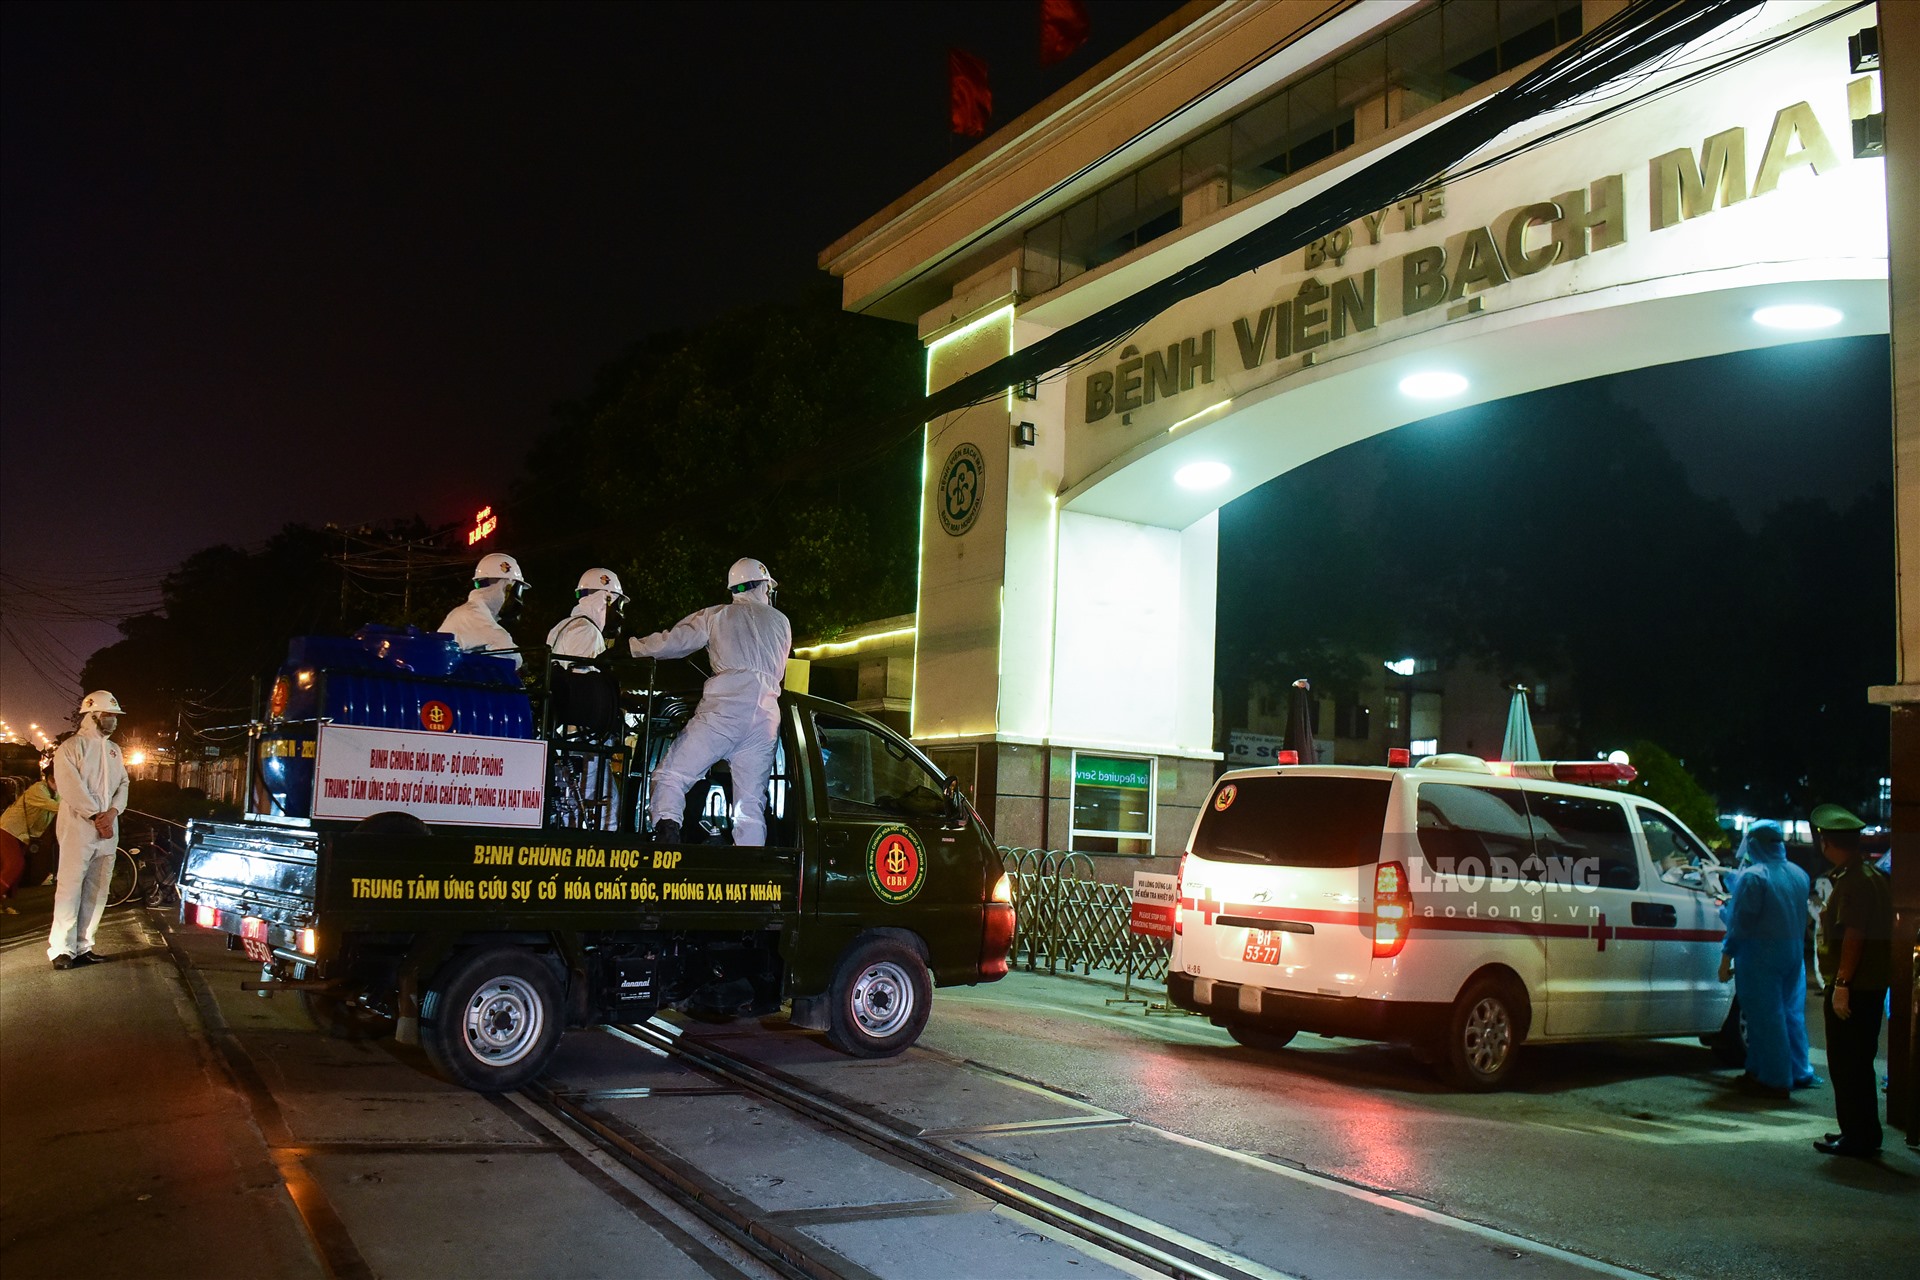 Đúng 19h00 ngày 28.3, đoàn xe của Binh chủng Hóa học đã có mặt tại bệnh viện Bạch Mai để tổ chức khử khuẩn toàn bộ bệnh viện.